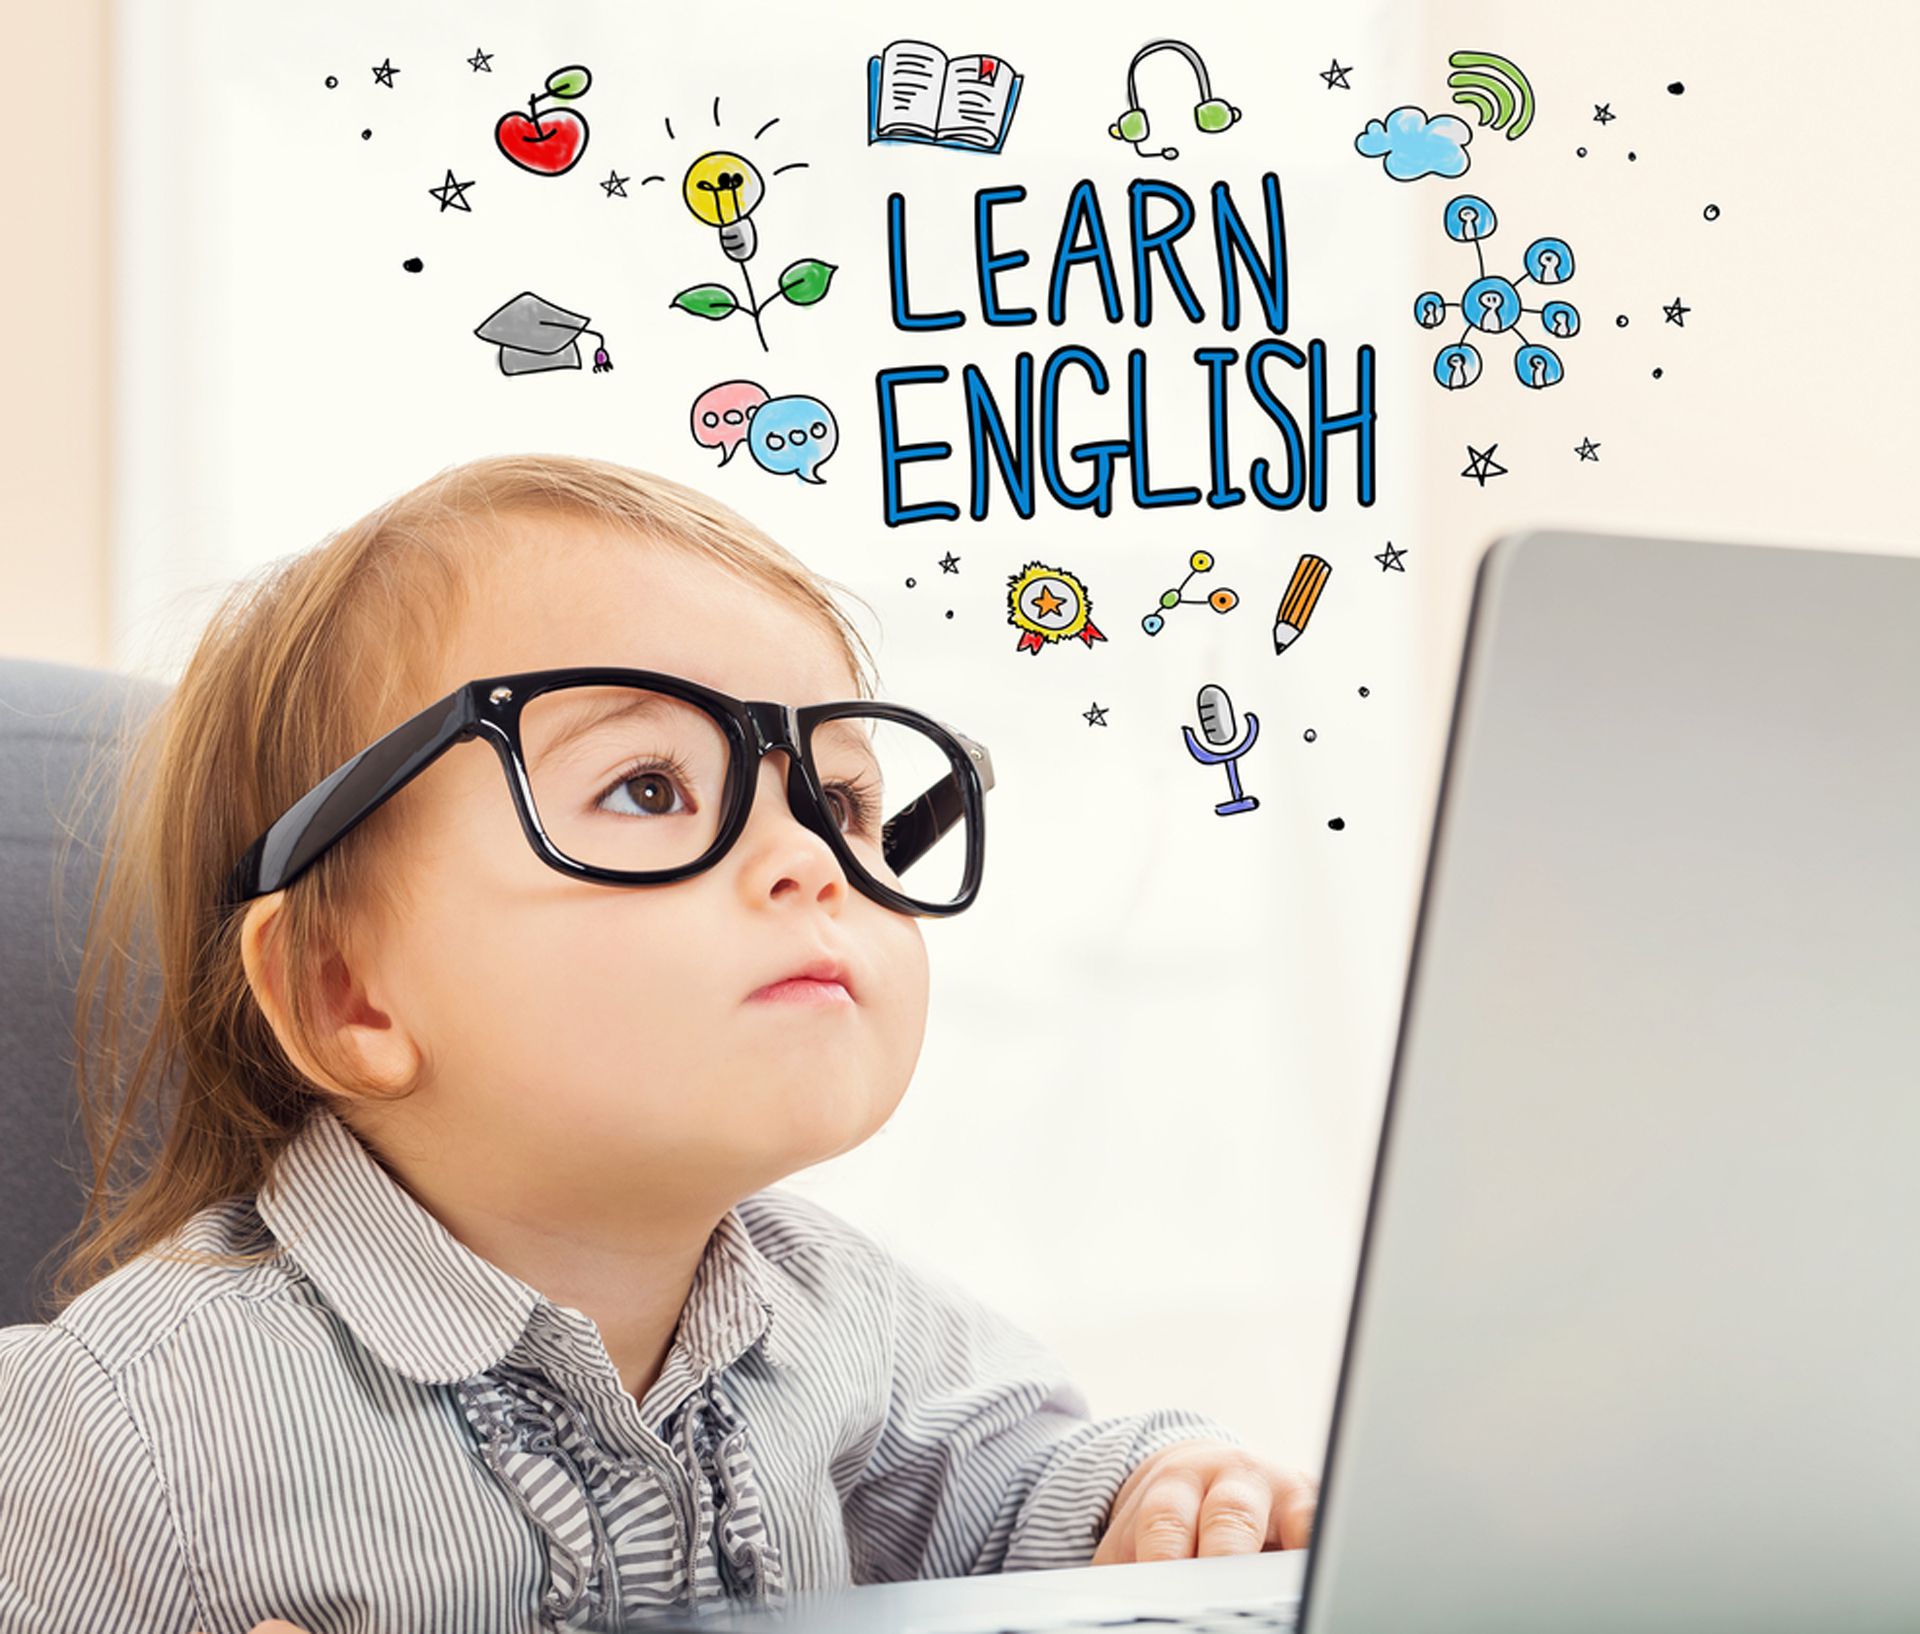 Aprender otros idiomas desde la infancia tiene beneficios (Shutterstock)